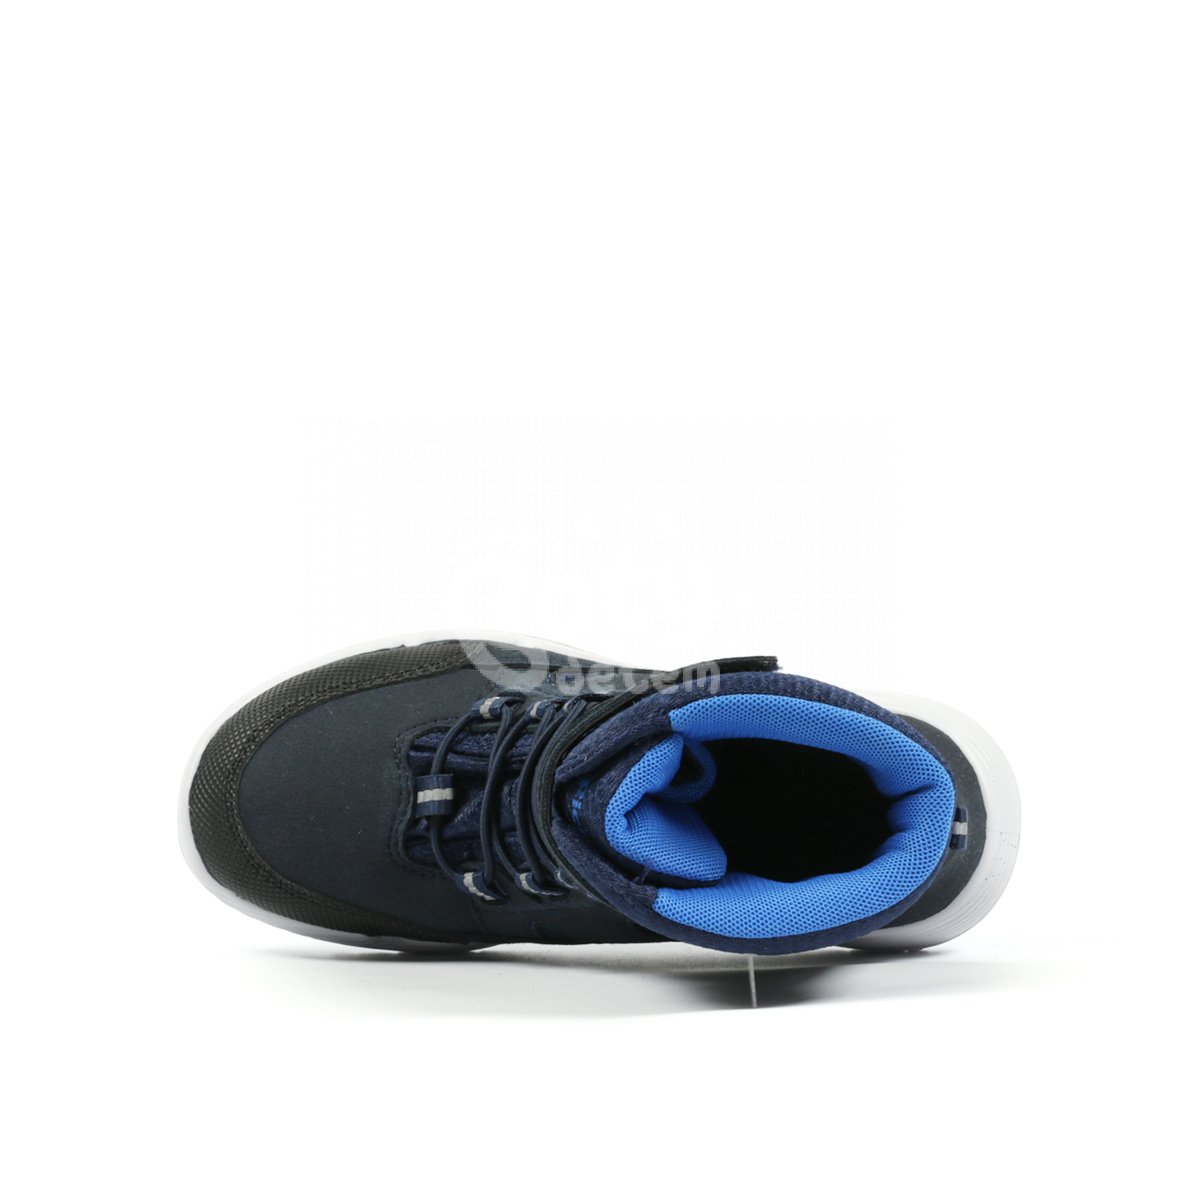 Zimní obuv RS-1 Richter 6356-4191-7200 modrá